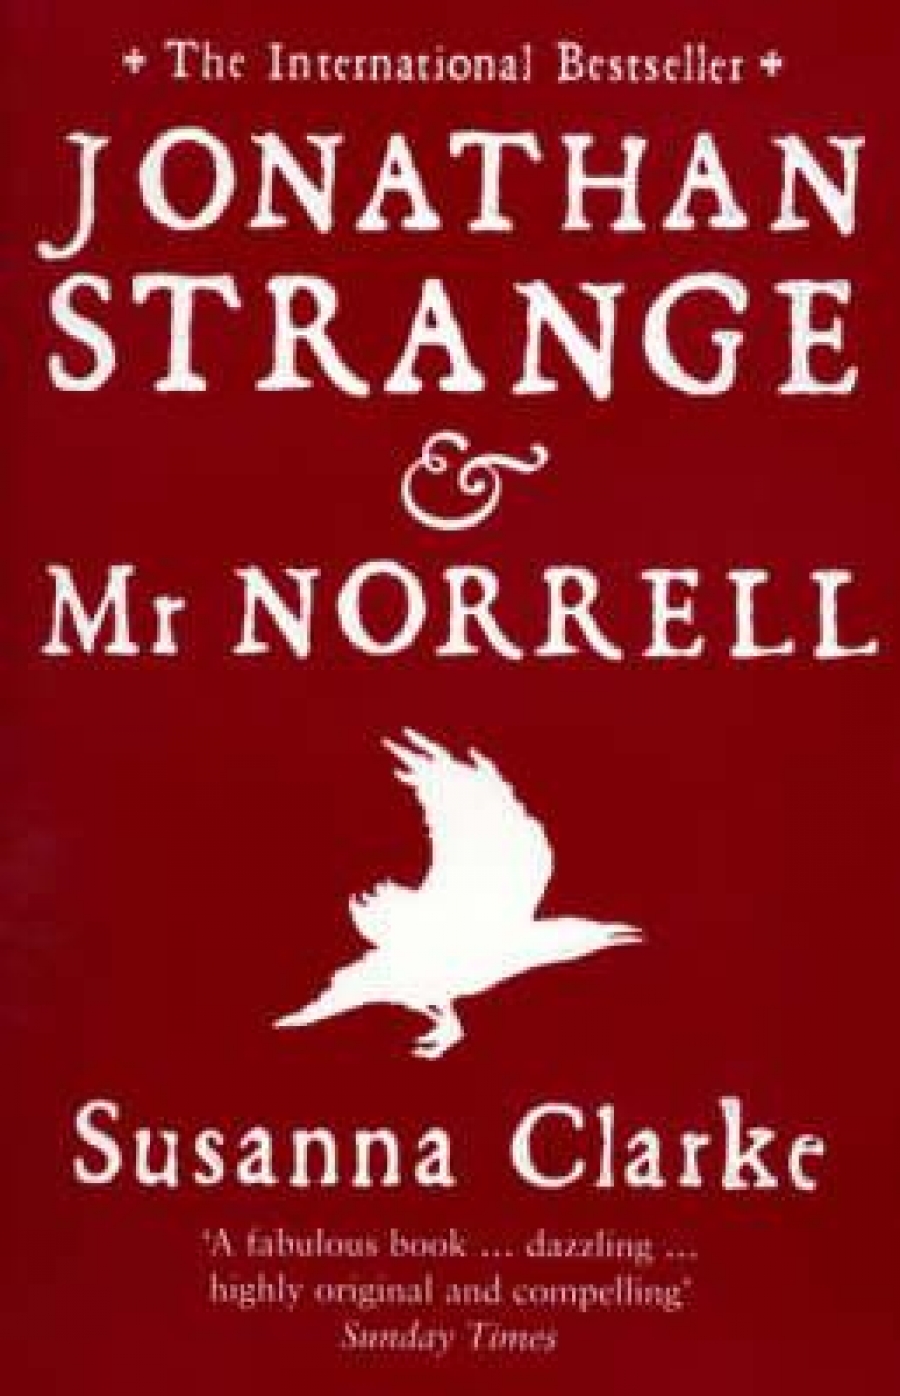 Clarke S. Jonathan Strange and Mr. Norrell 